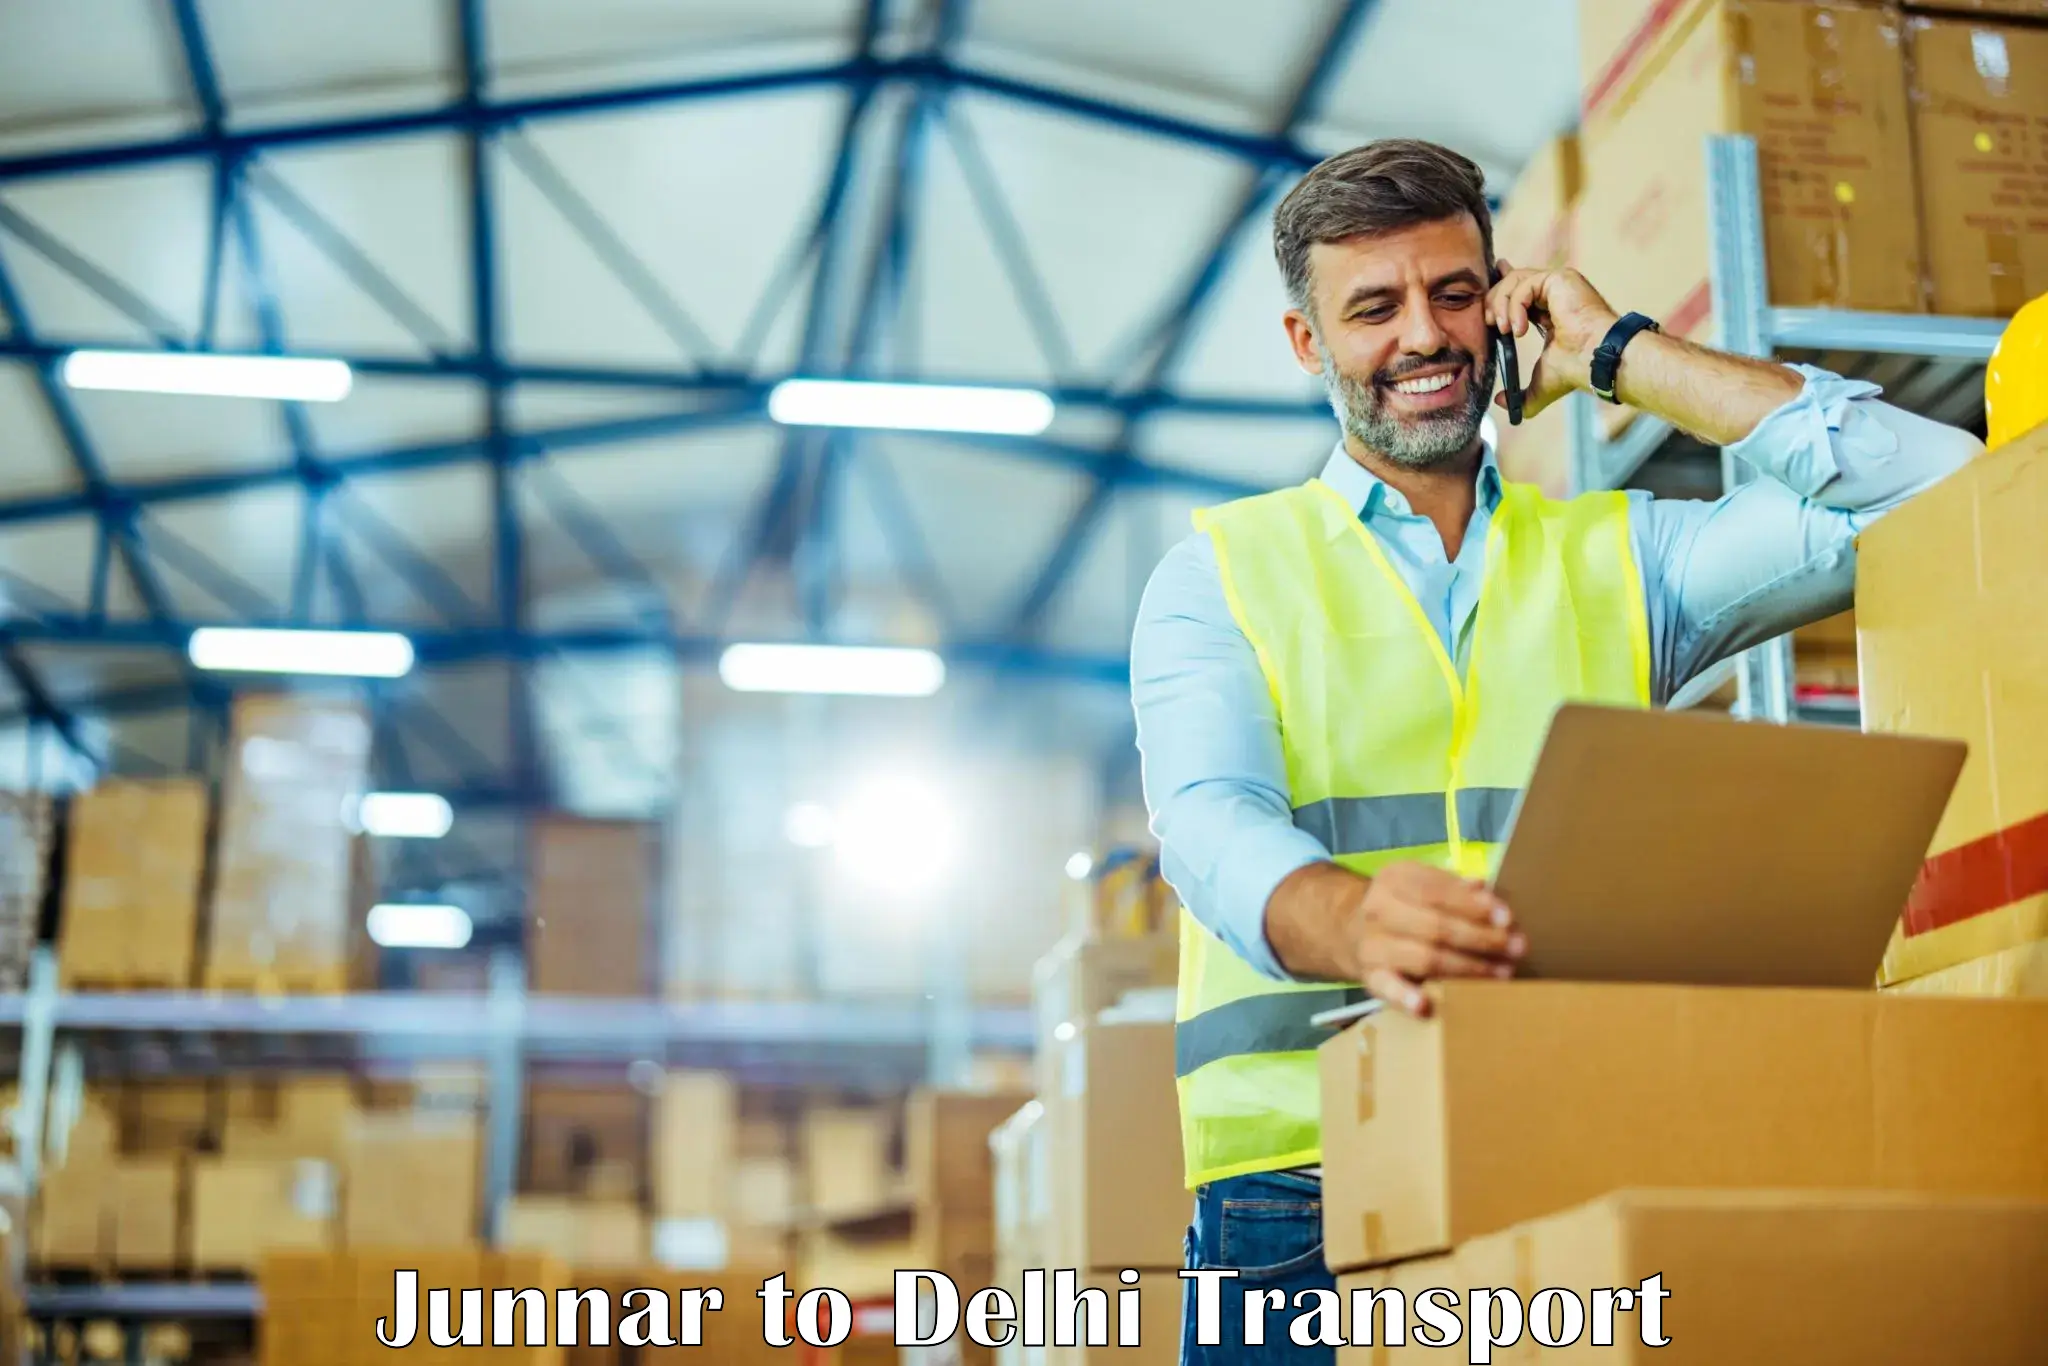 Logistics transportation services Junnar to Delhi